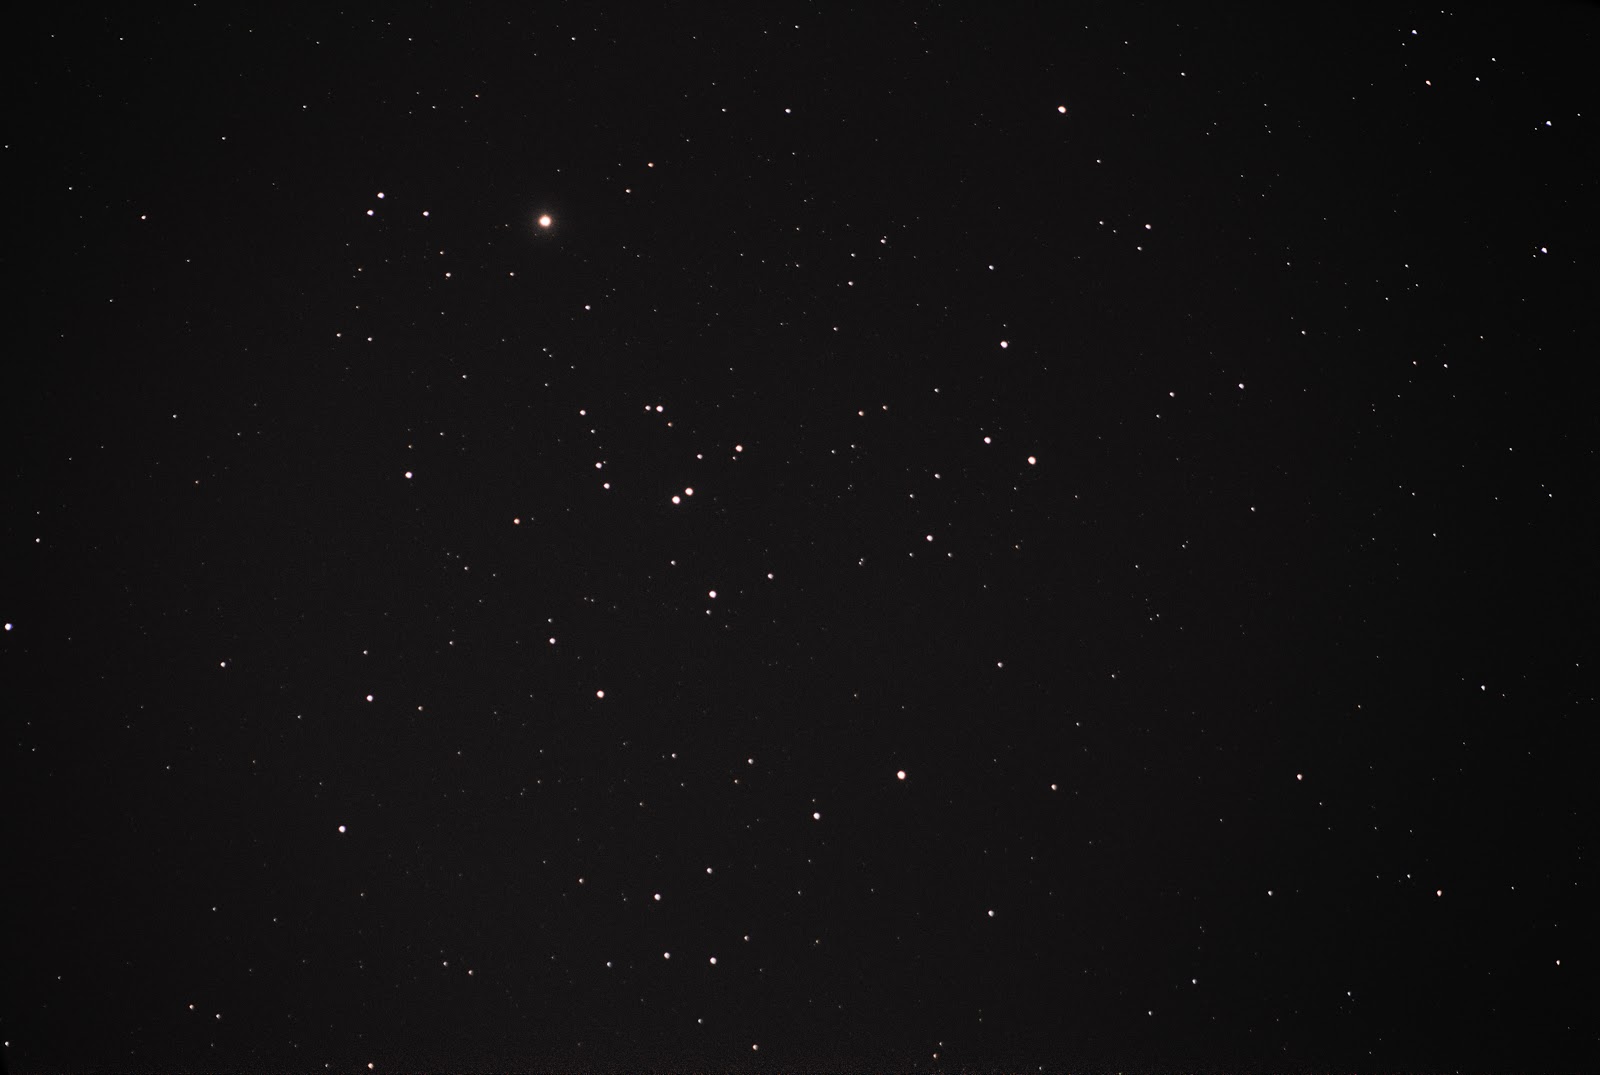 hyades star cluster in taurus